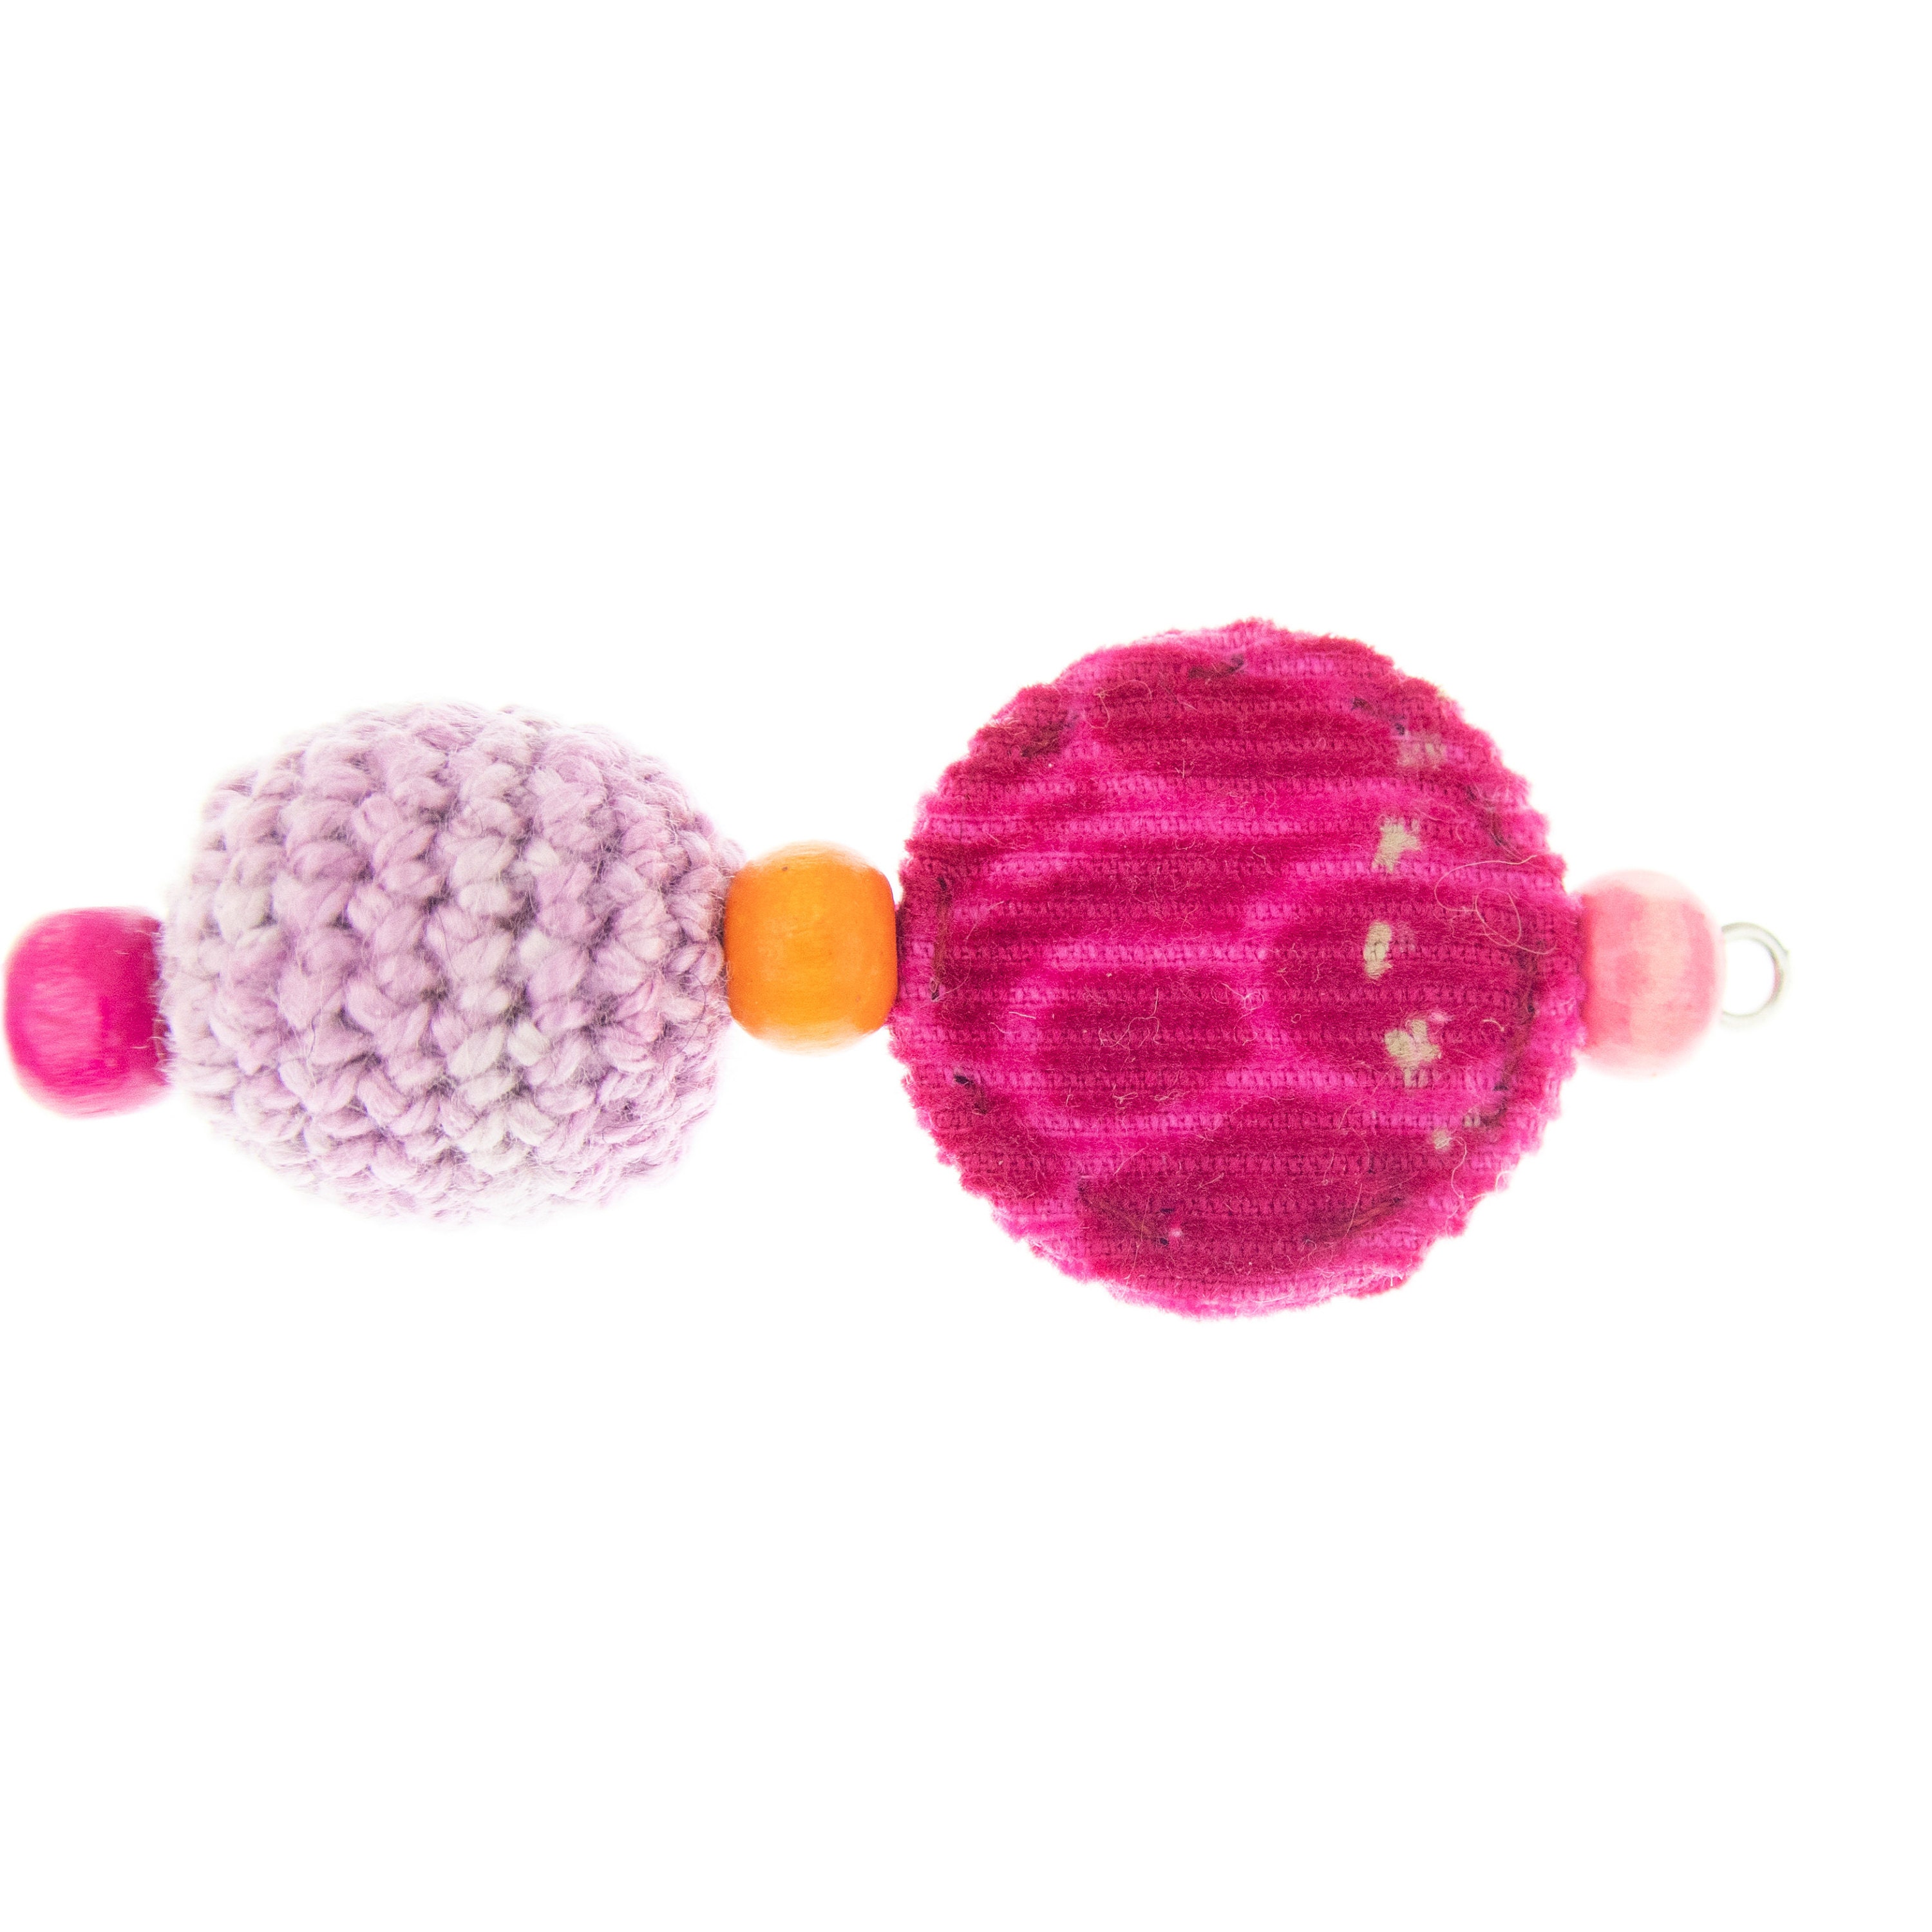 dangling tribal earrings for women in pink